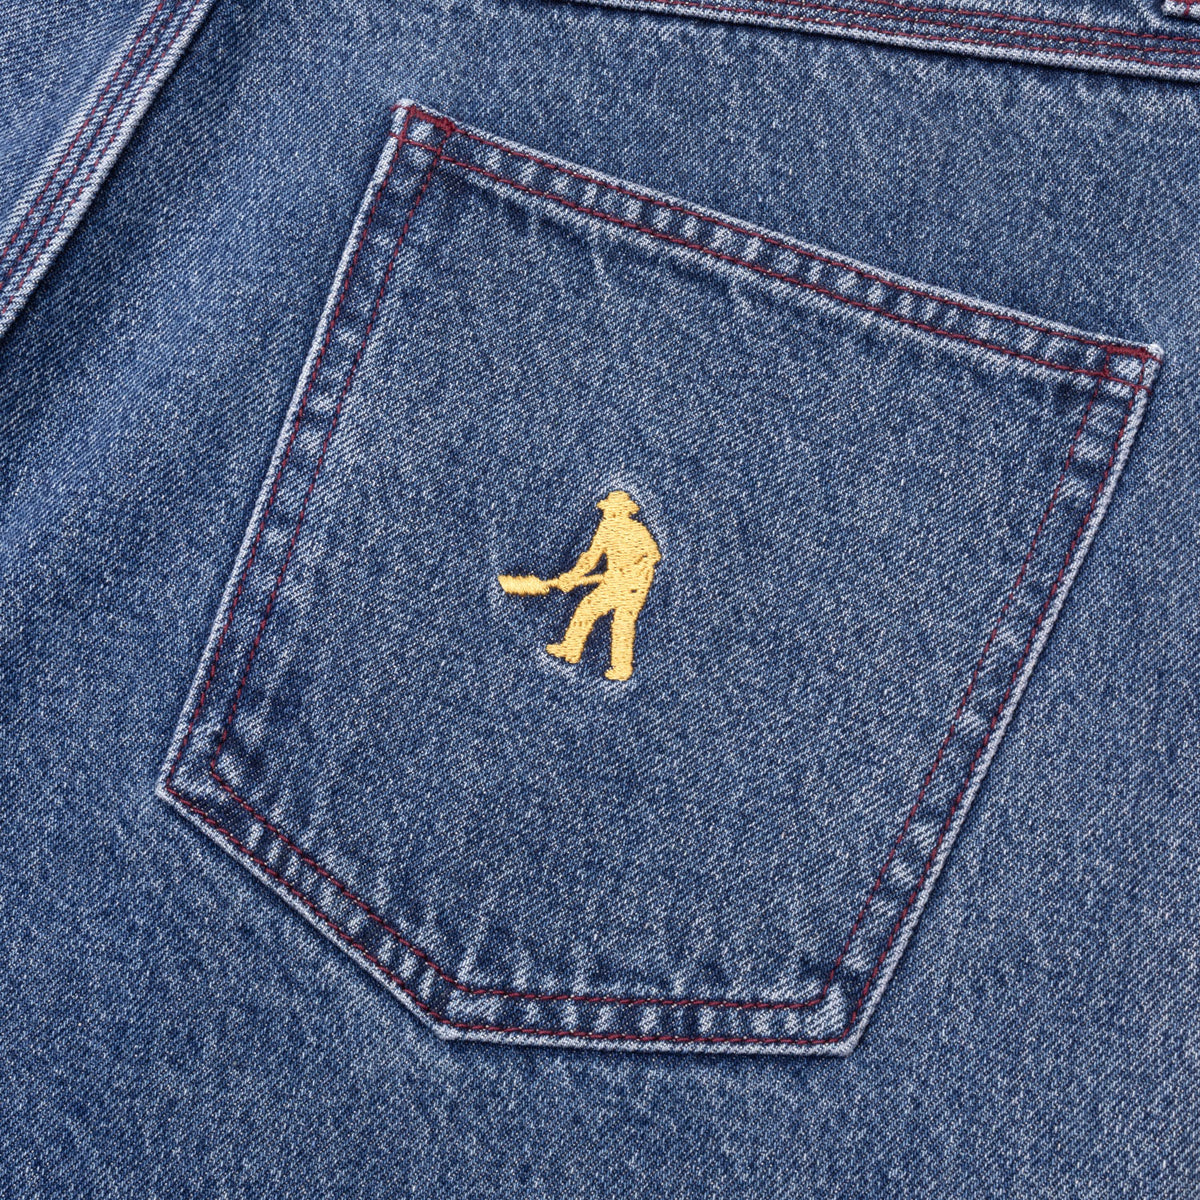 Pass~Port Workers Club Denim Jeans - Washed Dark Indigo